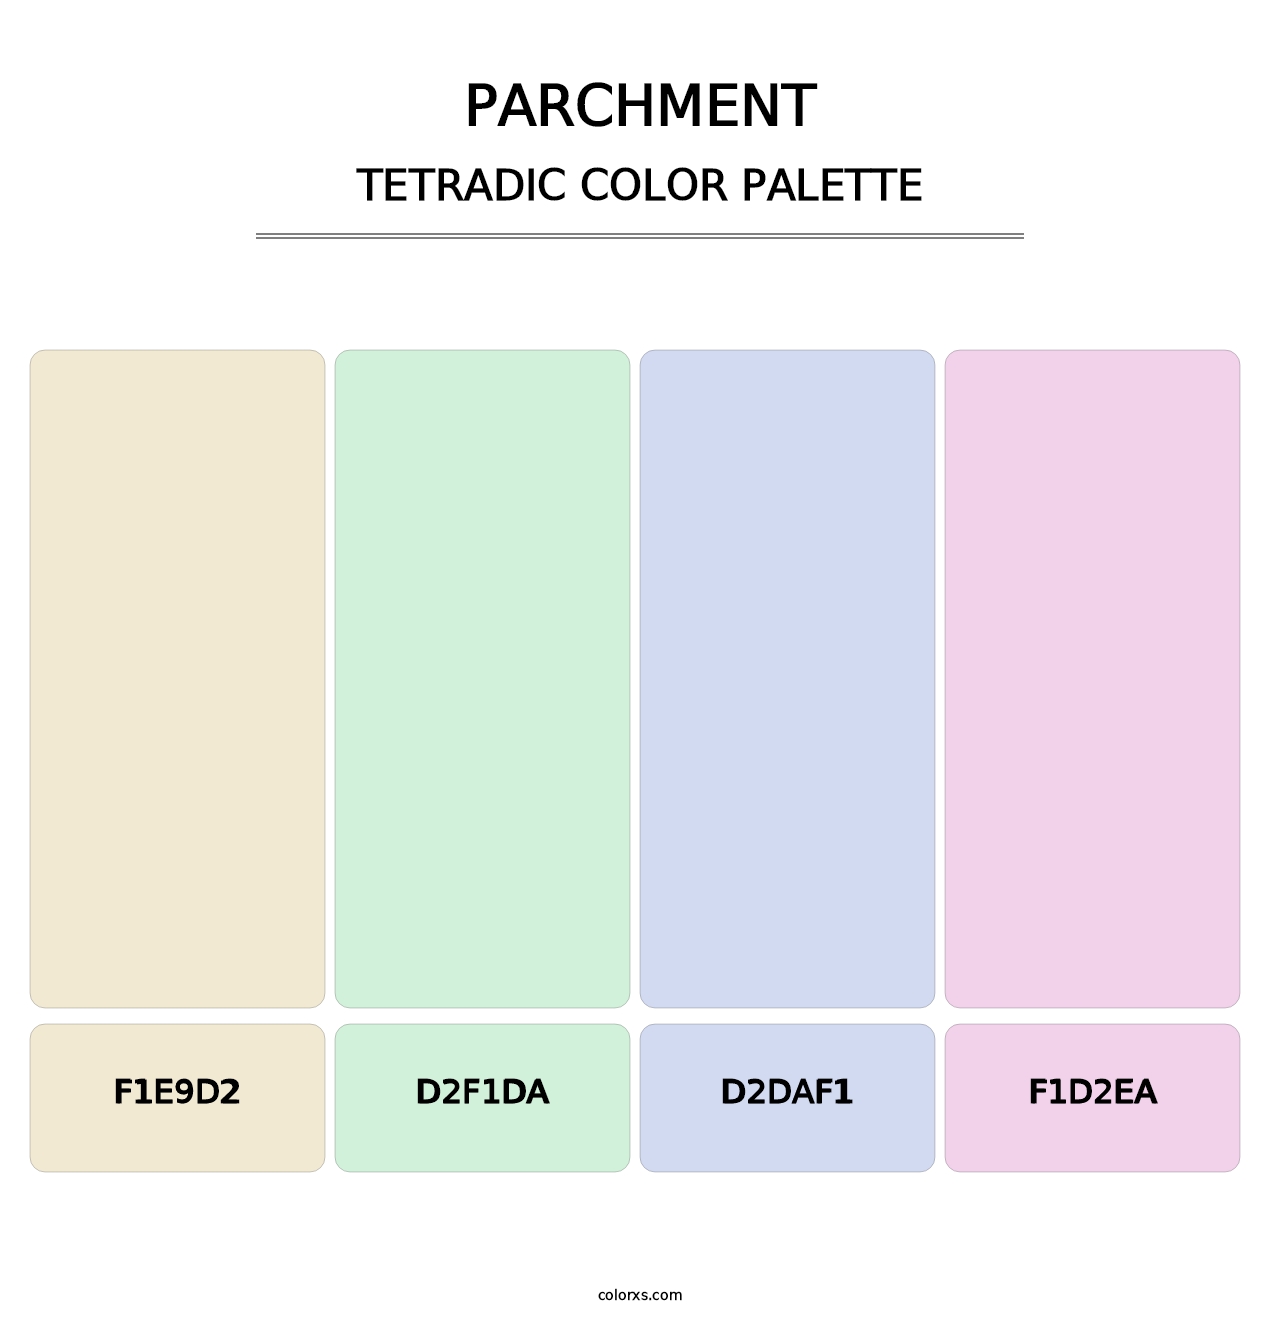 Parchment - Tetradic Color Palette